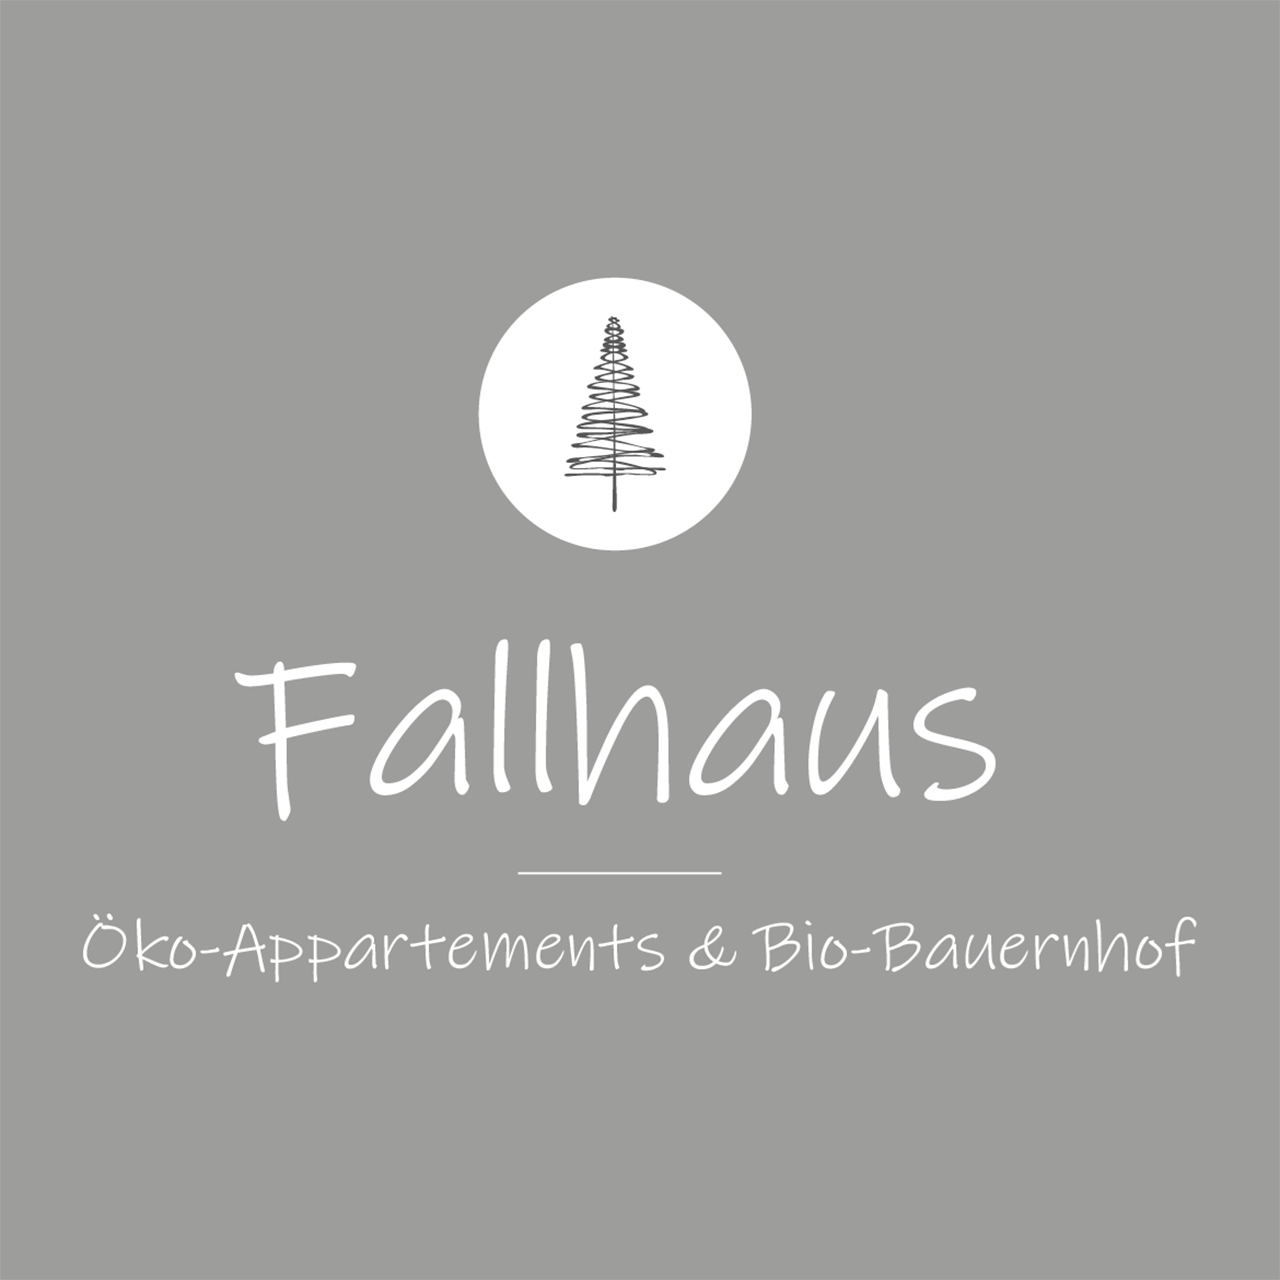 Öko-Appartements Biobauernhof "Fallhaus" Gastgeber Christina Ortner